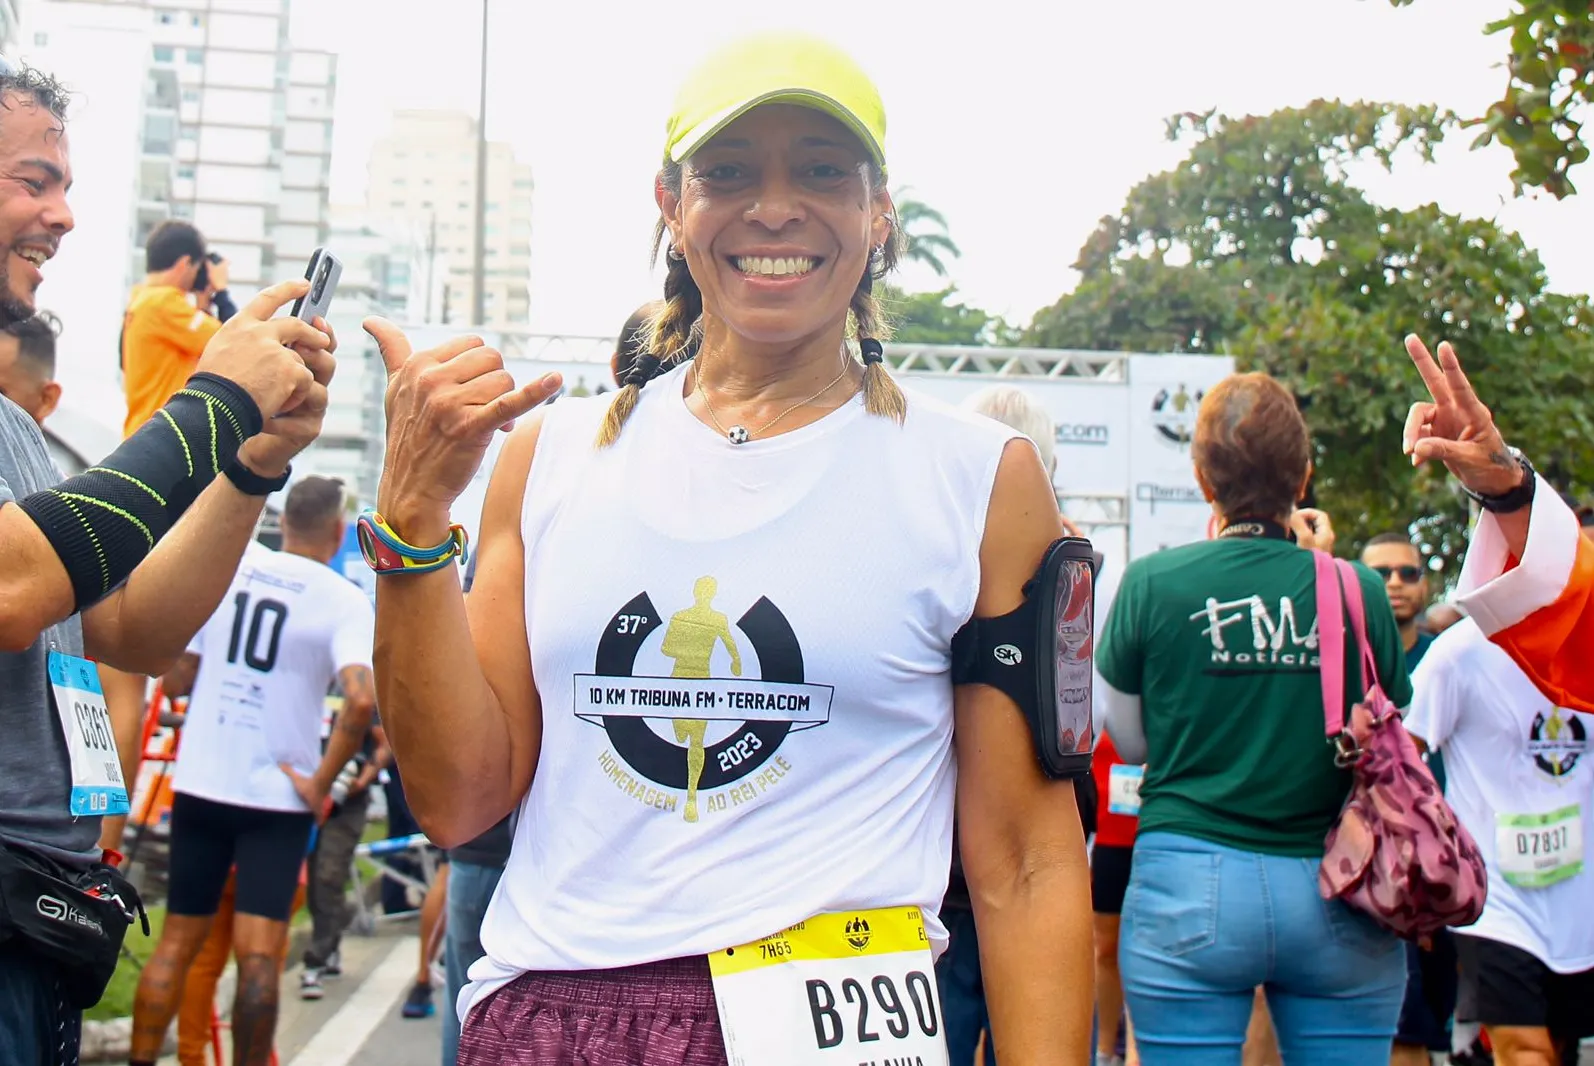 Filha de Pelé, Flávia também correu os 10 KM Tribuna FM-Terracom